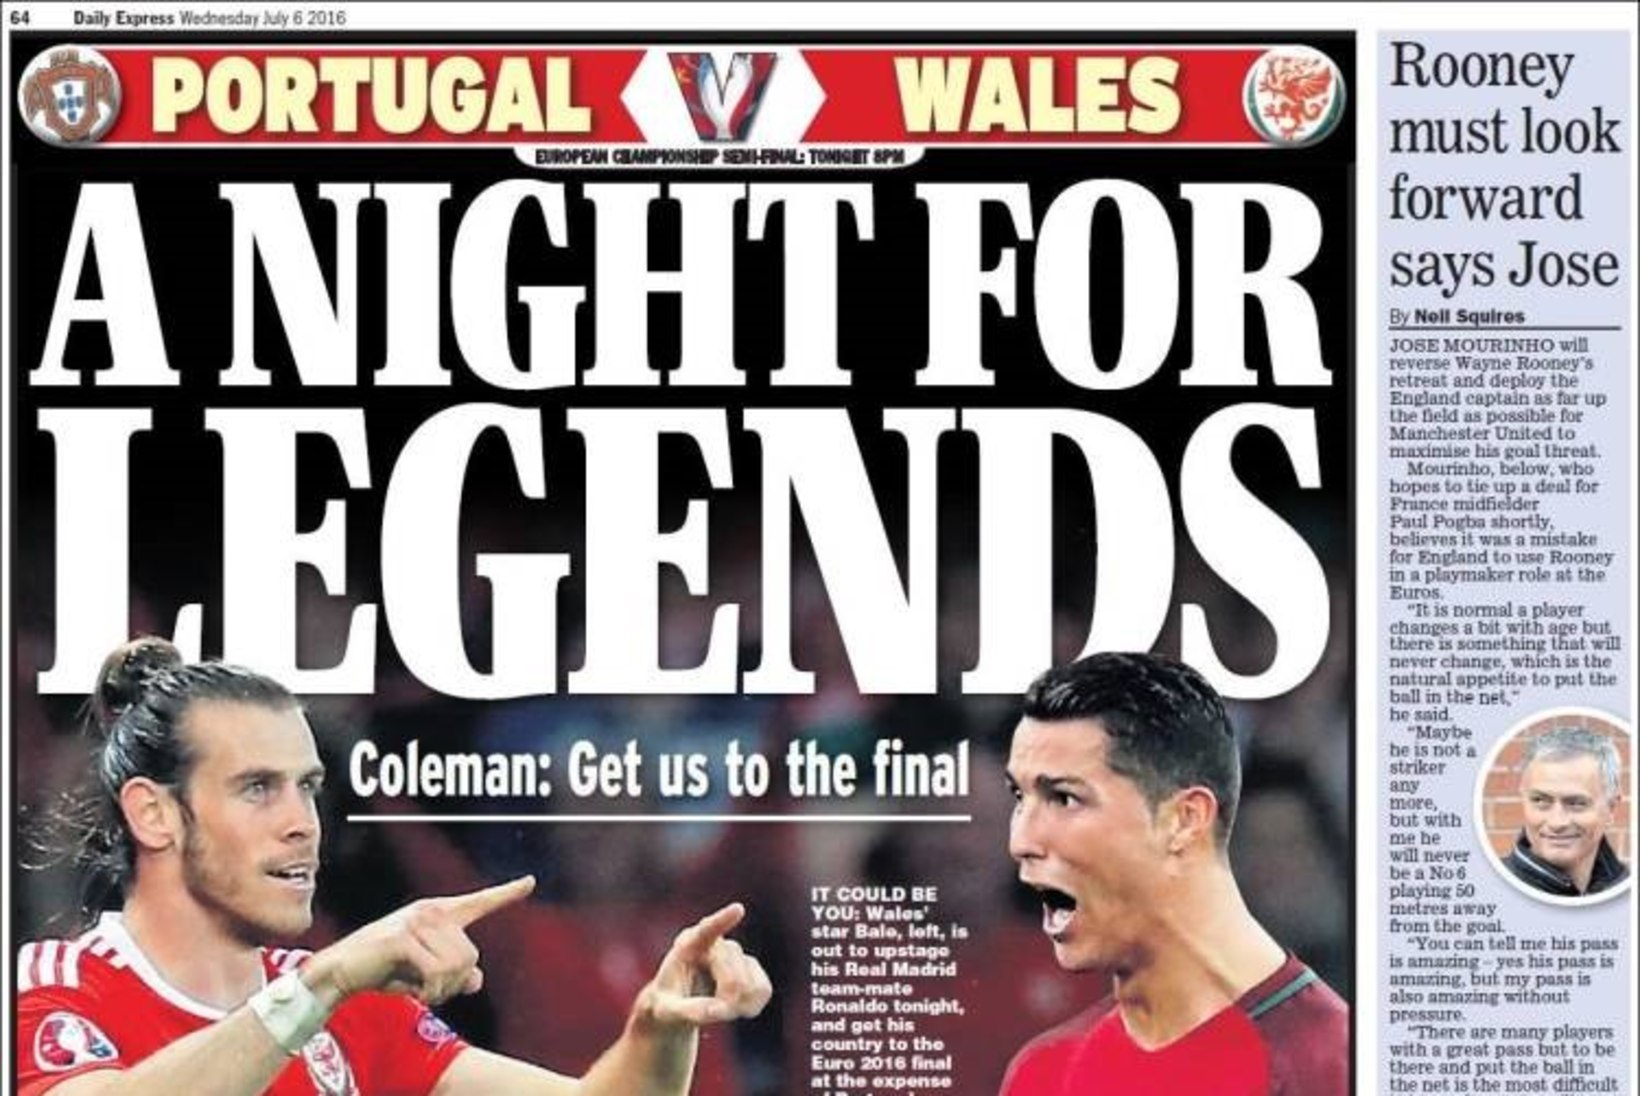 FOTOD | Vaata ilusaid Wales - Portugal duellile pühendatud ajalehtede esikaasi!